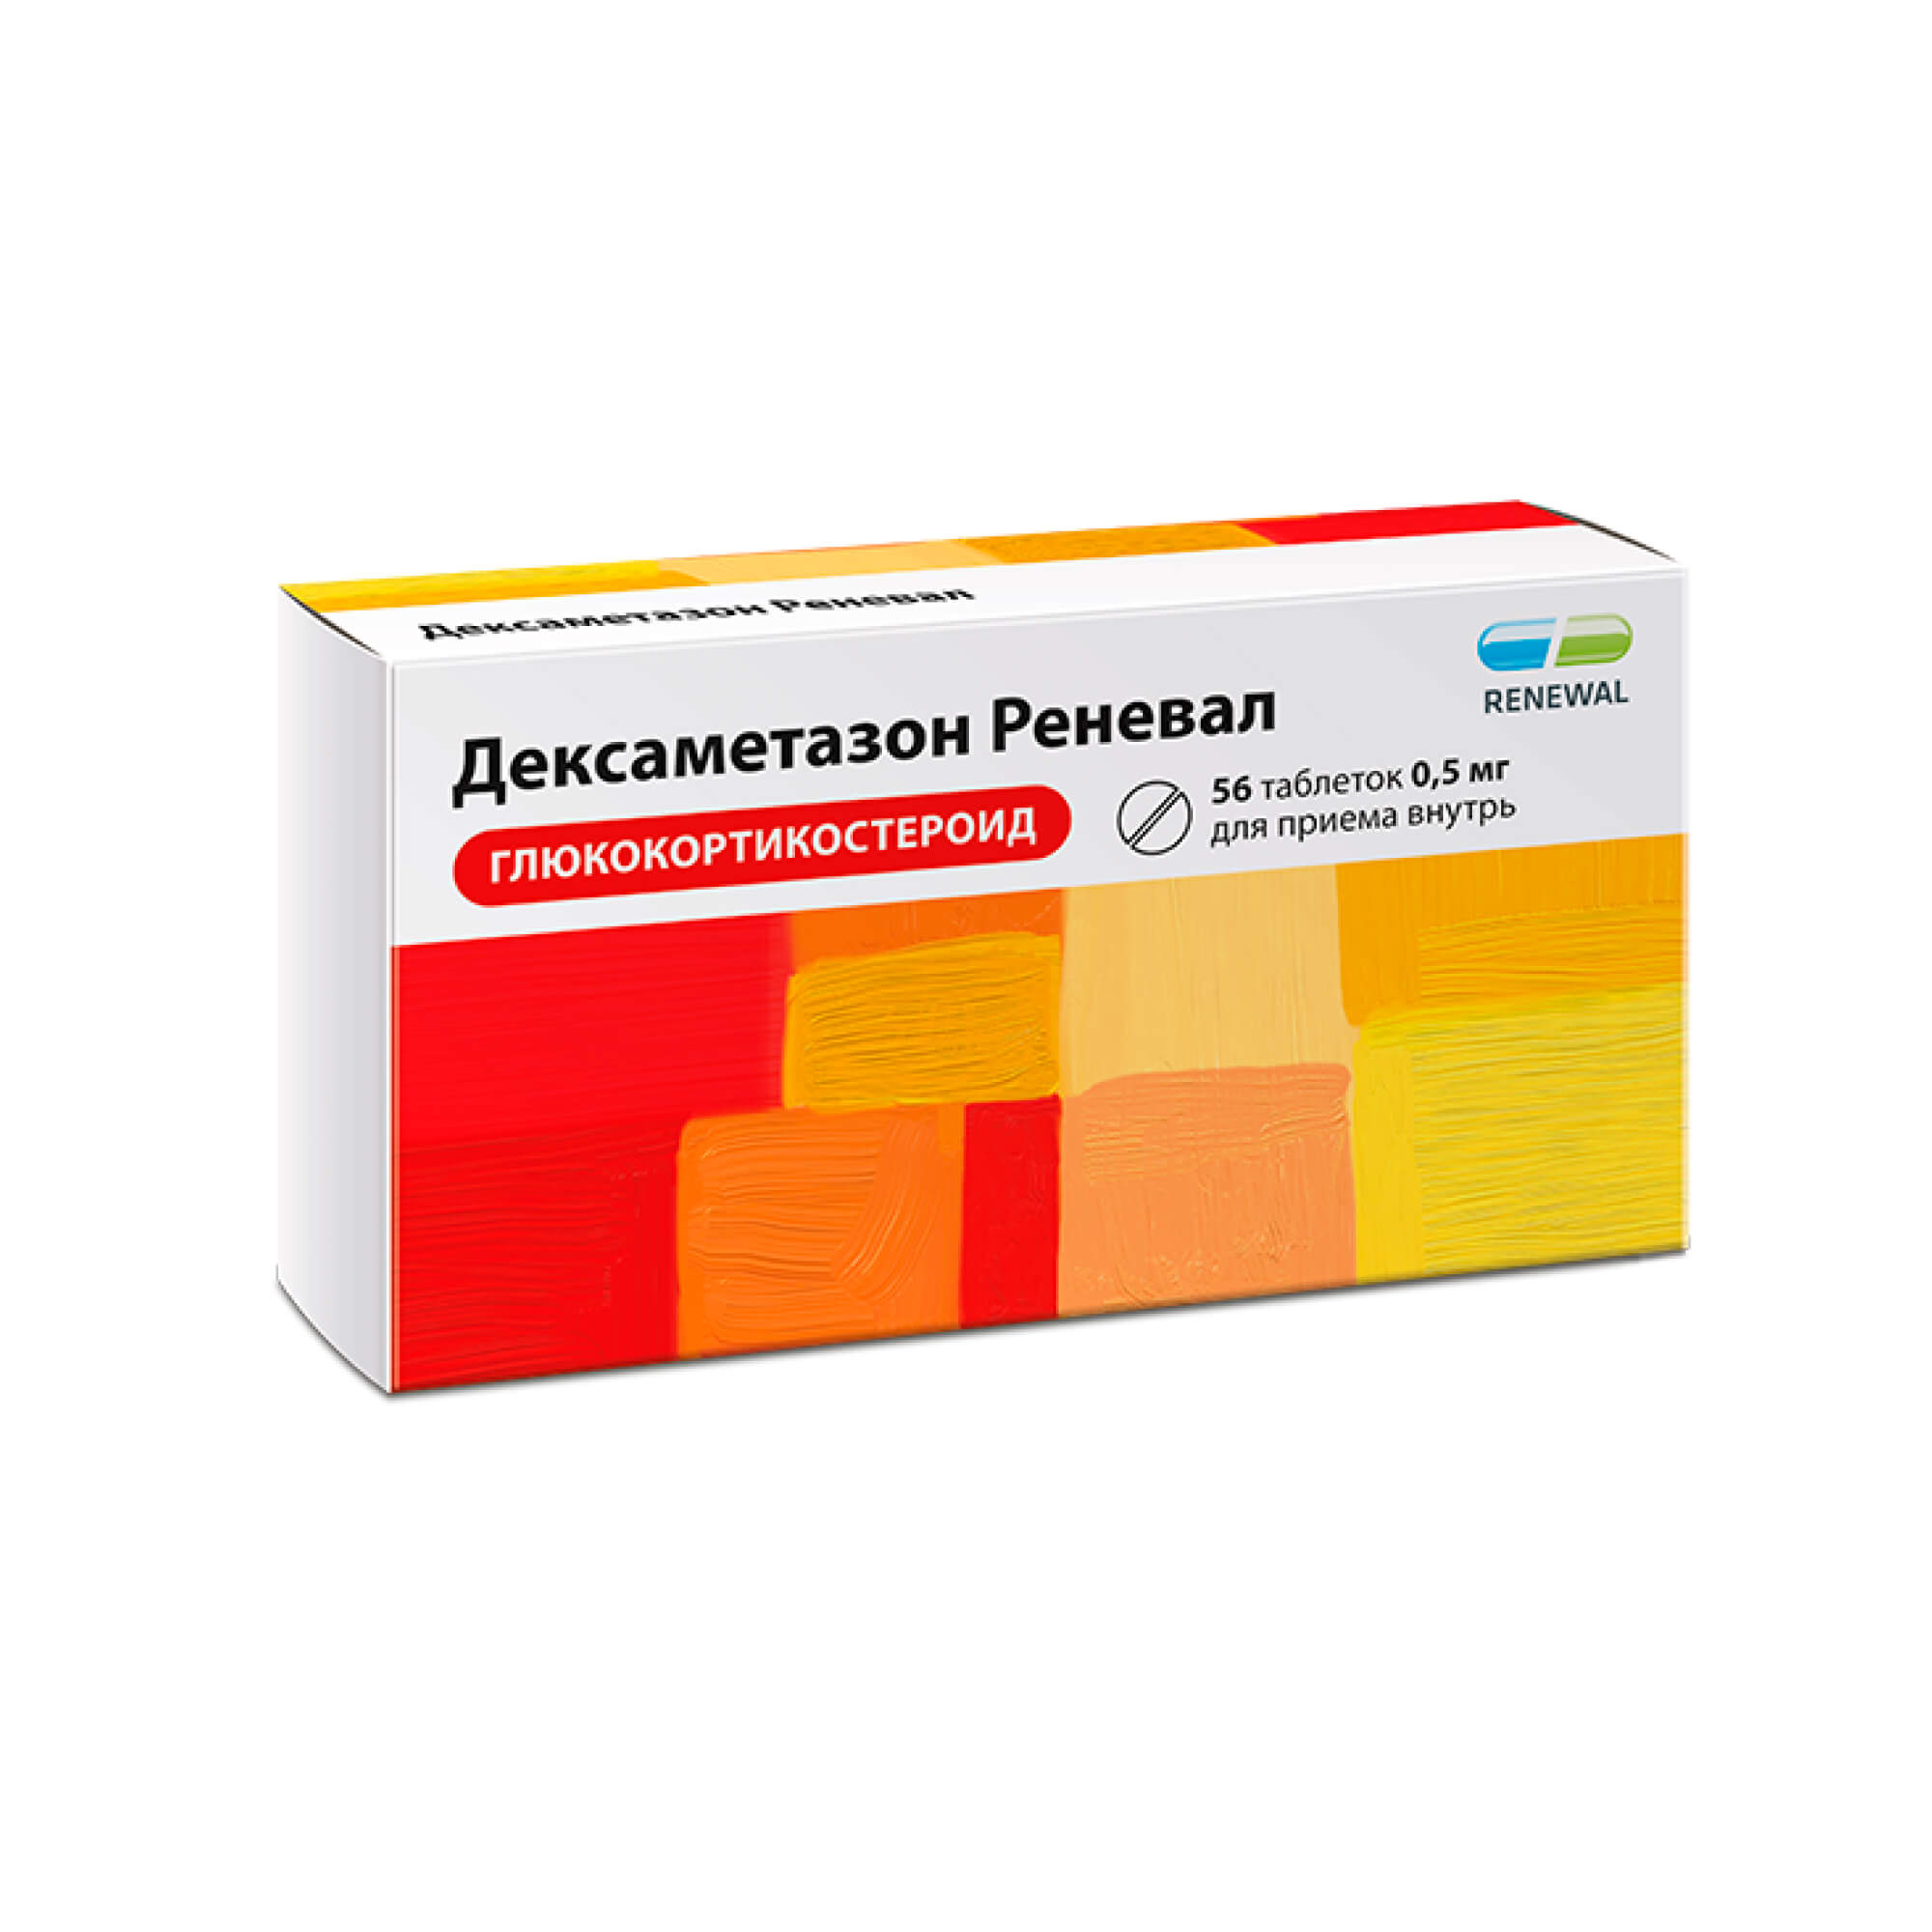 Дексаметазон таблетки 0,5мг 56шт - купить в Москве лекарство Дексаметазон  таблетки 0,5мг 56шт, официальная инструкция по применению